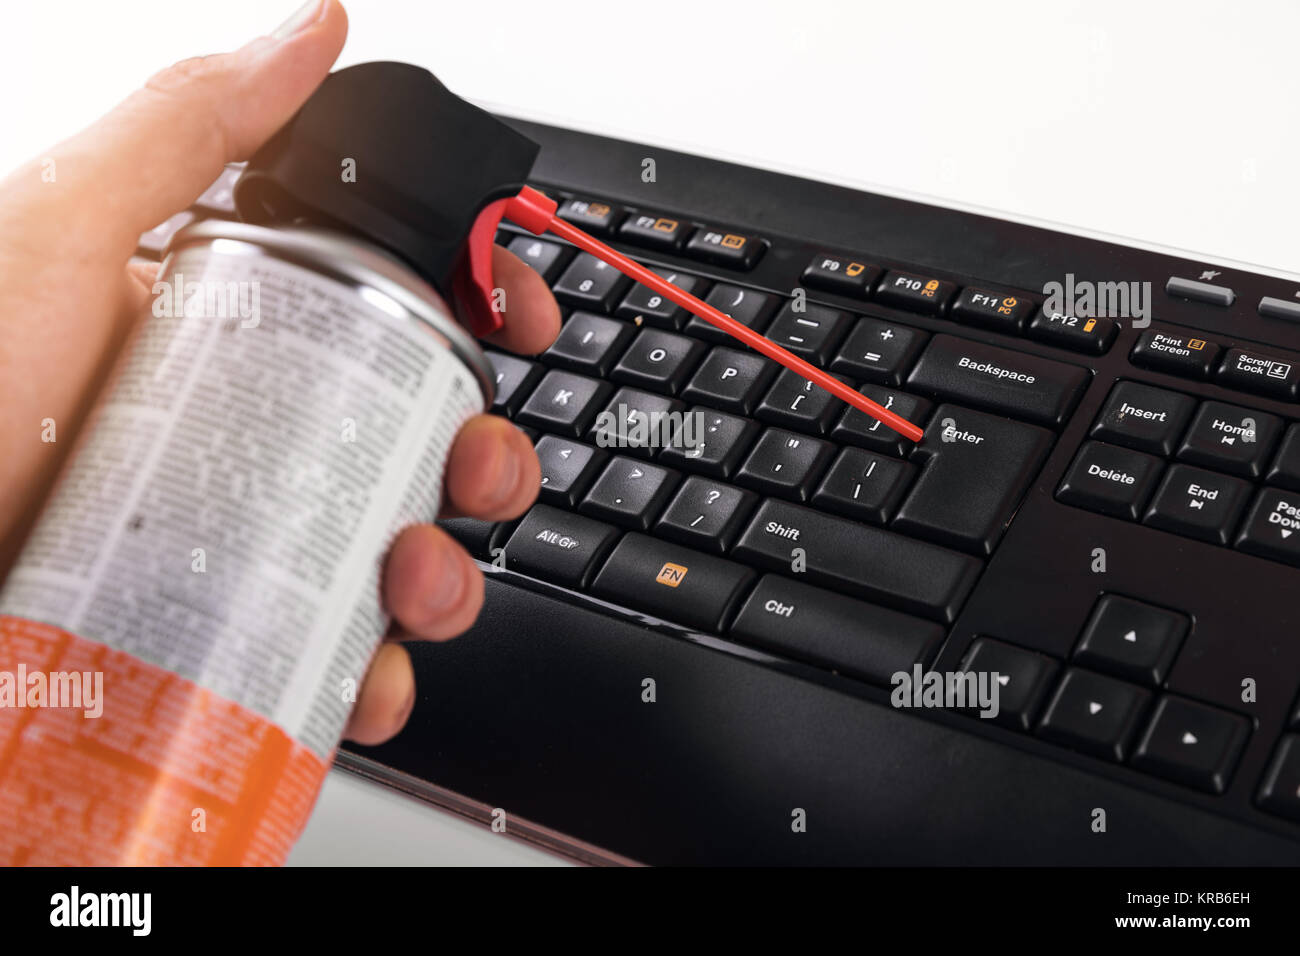 Reinigung Staub von Computer Tastatur mit Druckluft Reiniger  Stockfotografie - Alamy